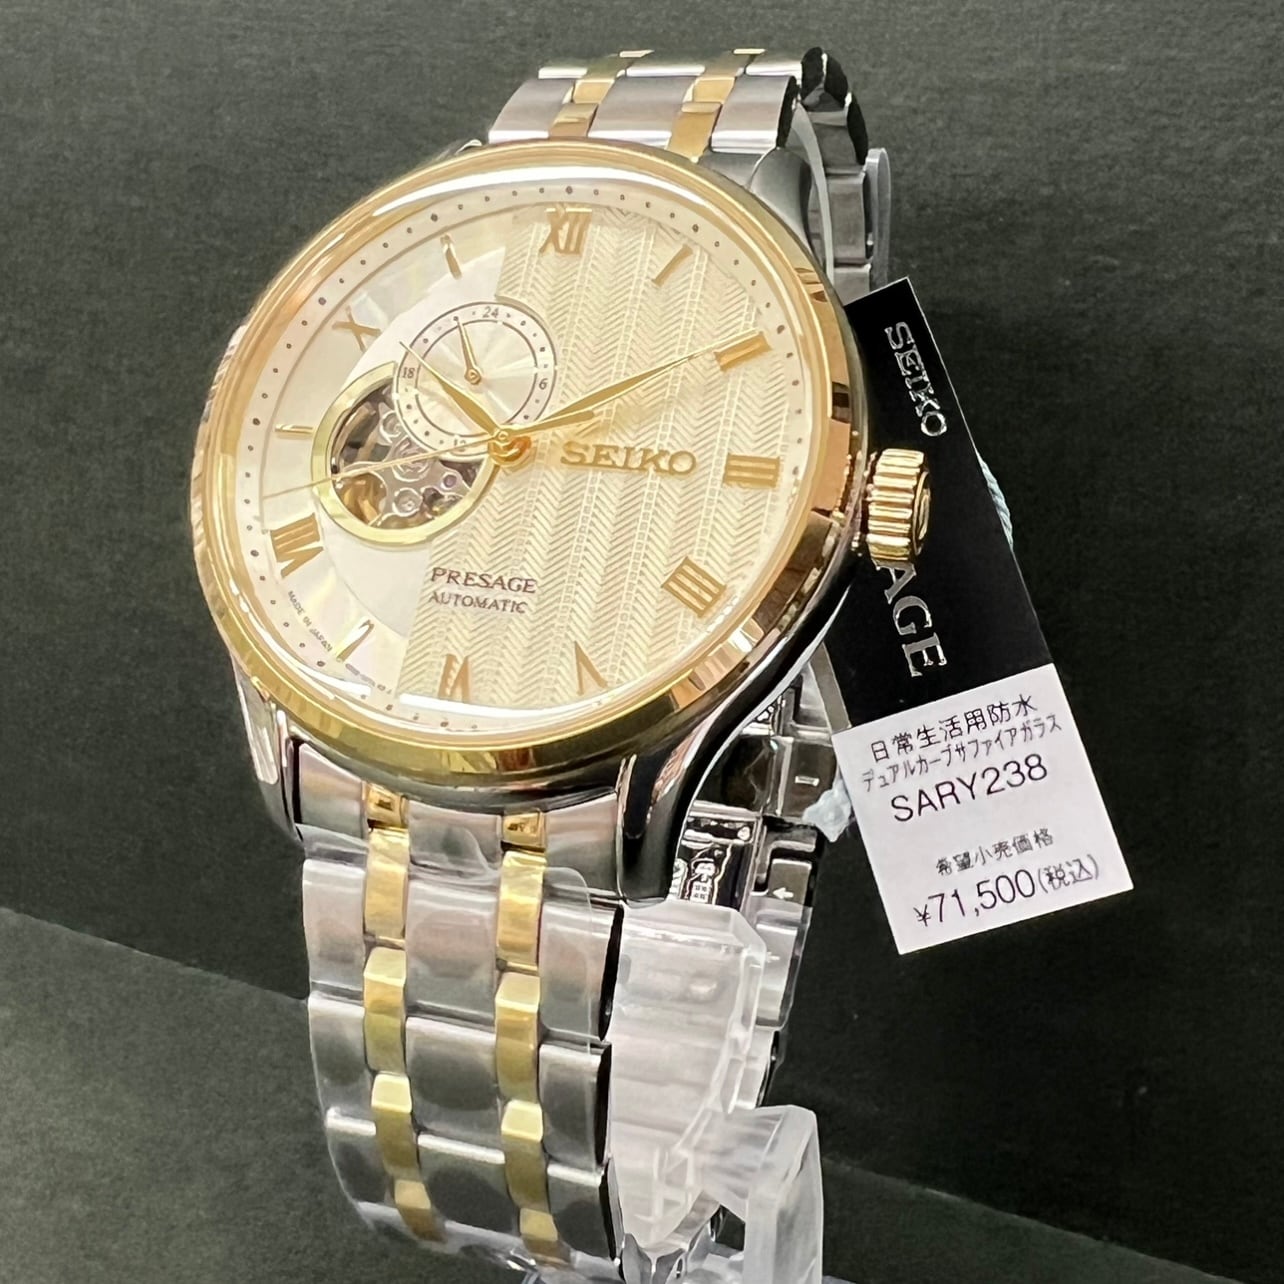 セイコー SEIKO PRESAGE 腕時計 メンズ SARY238 プレザージュ 自動巻き ゴールドxシルバー/ゴールド アナログ表示